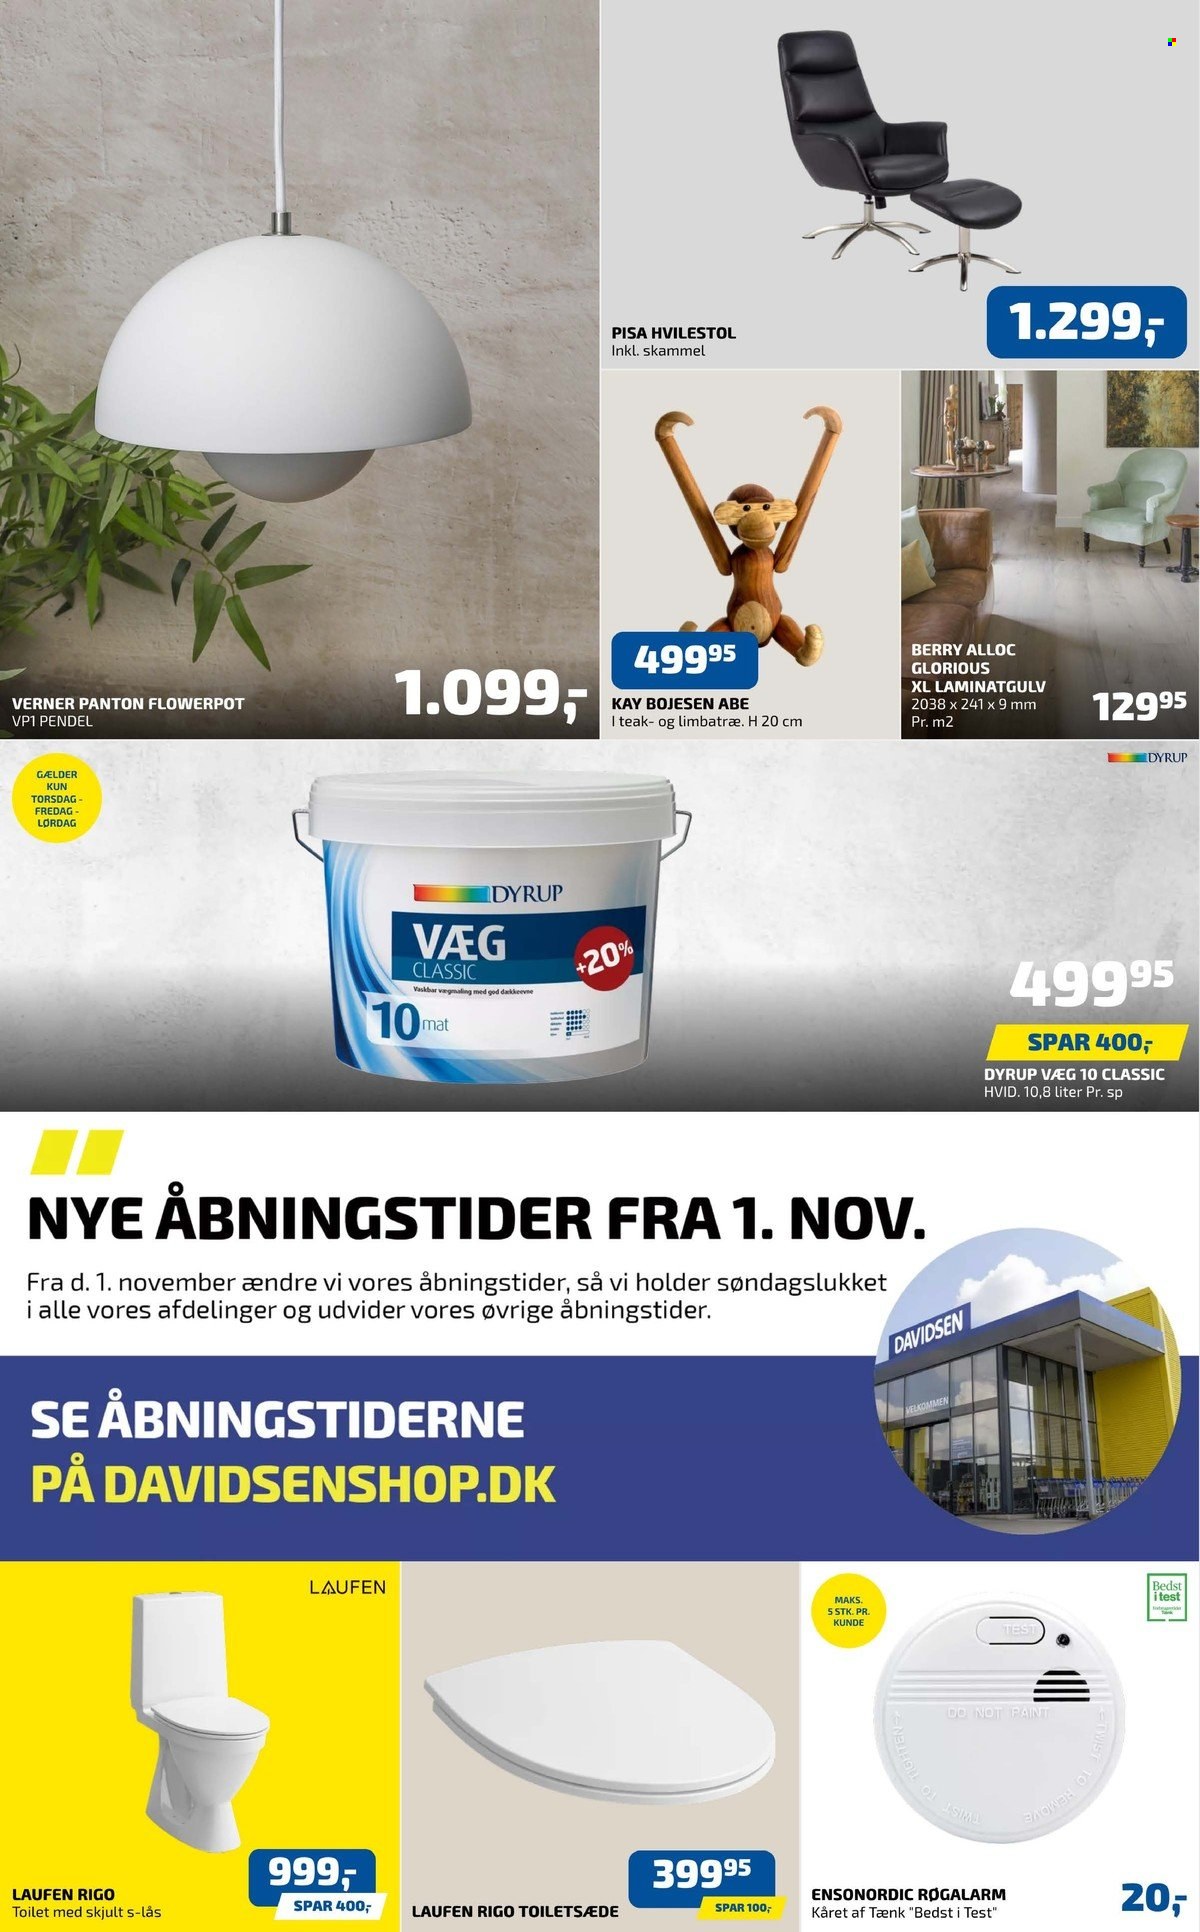 thumbnail - Davidsen tilbud  - 11.11.2021 - 17.11.2021 - tilbudsprodukter - pendel, toilet, Dyrup, laminatgulv. Side 1.